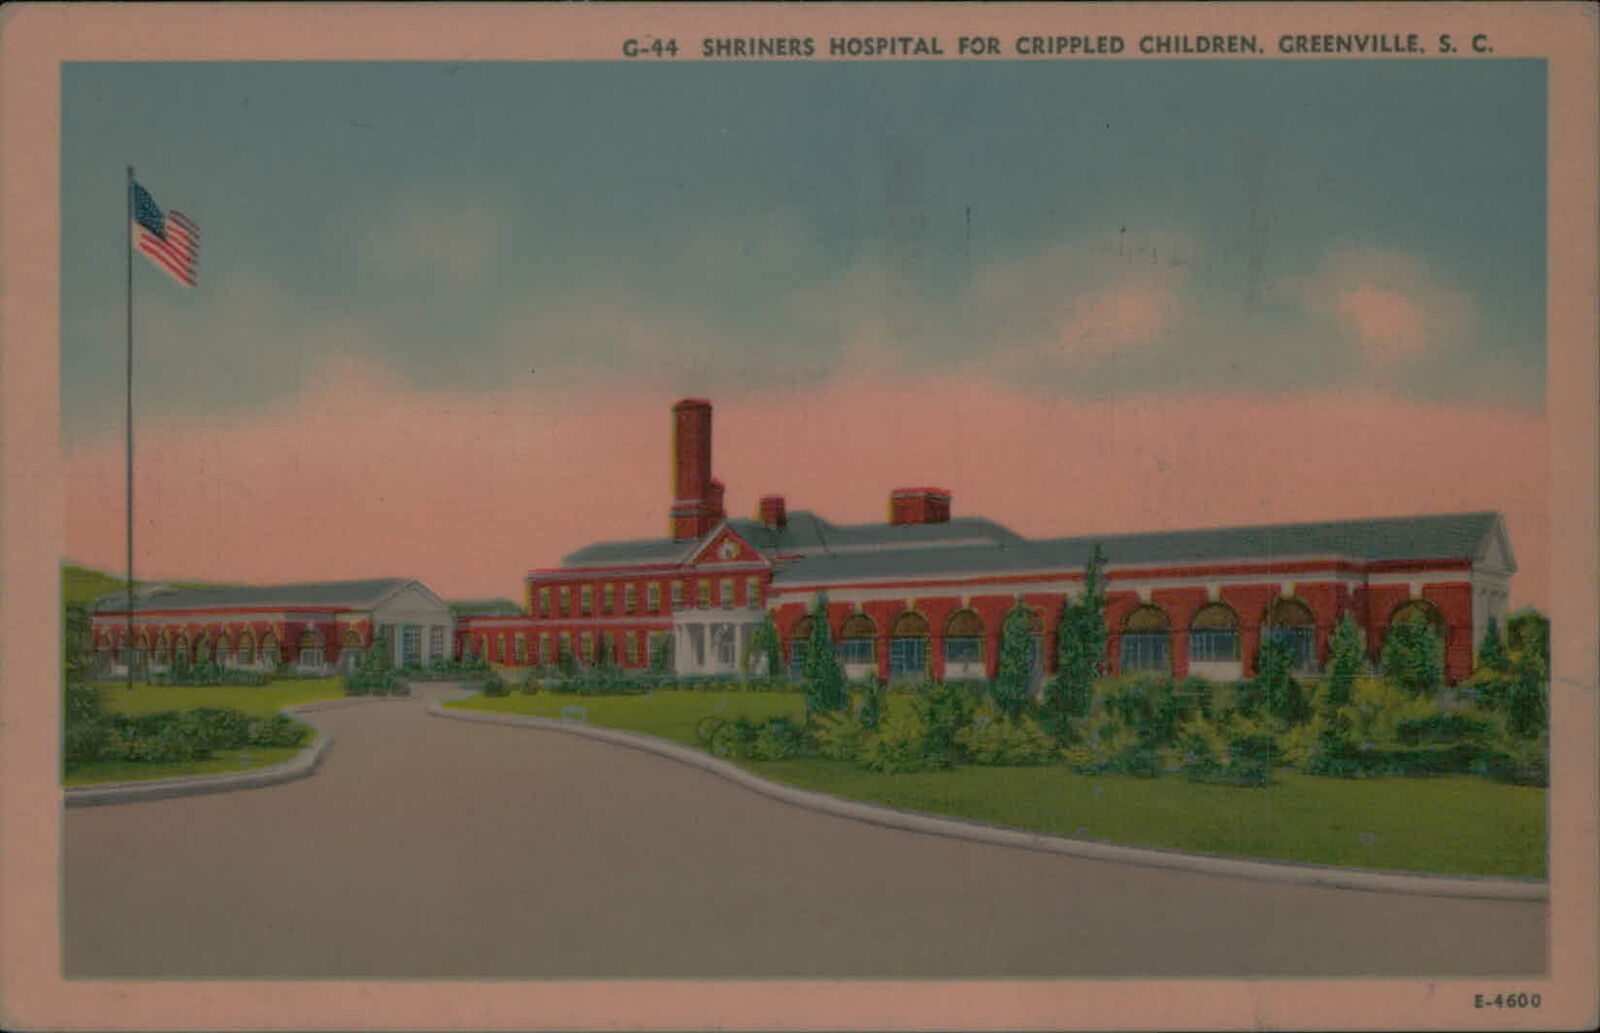 Postcard: G-44 SHRINERS HOSPITAL FOR CRIPPLED CHILDREN. GREENVILLE